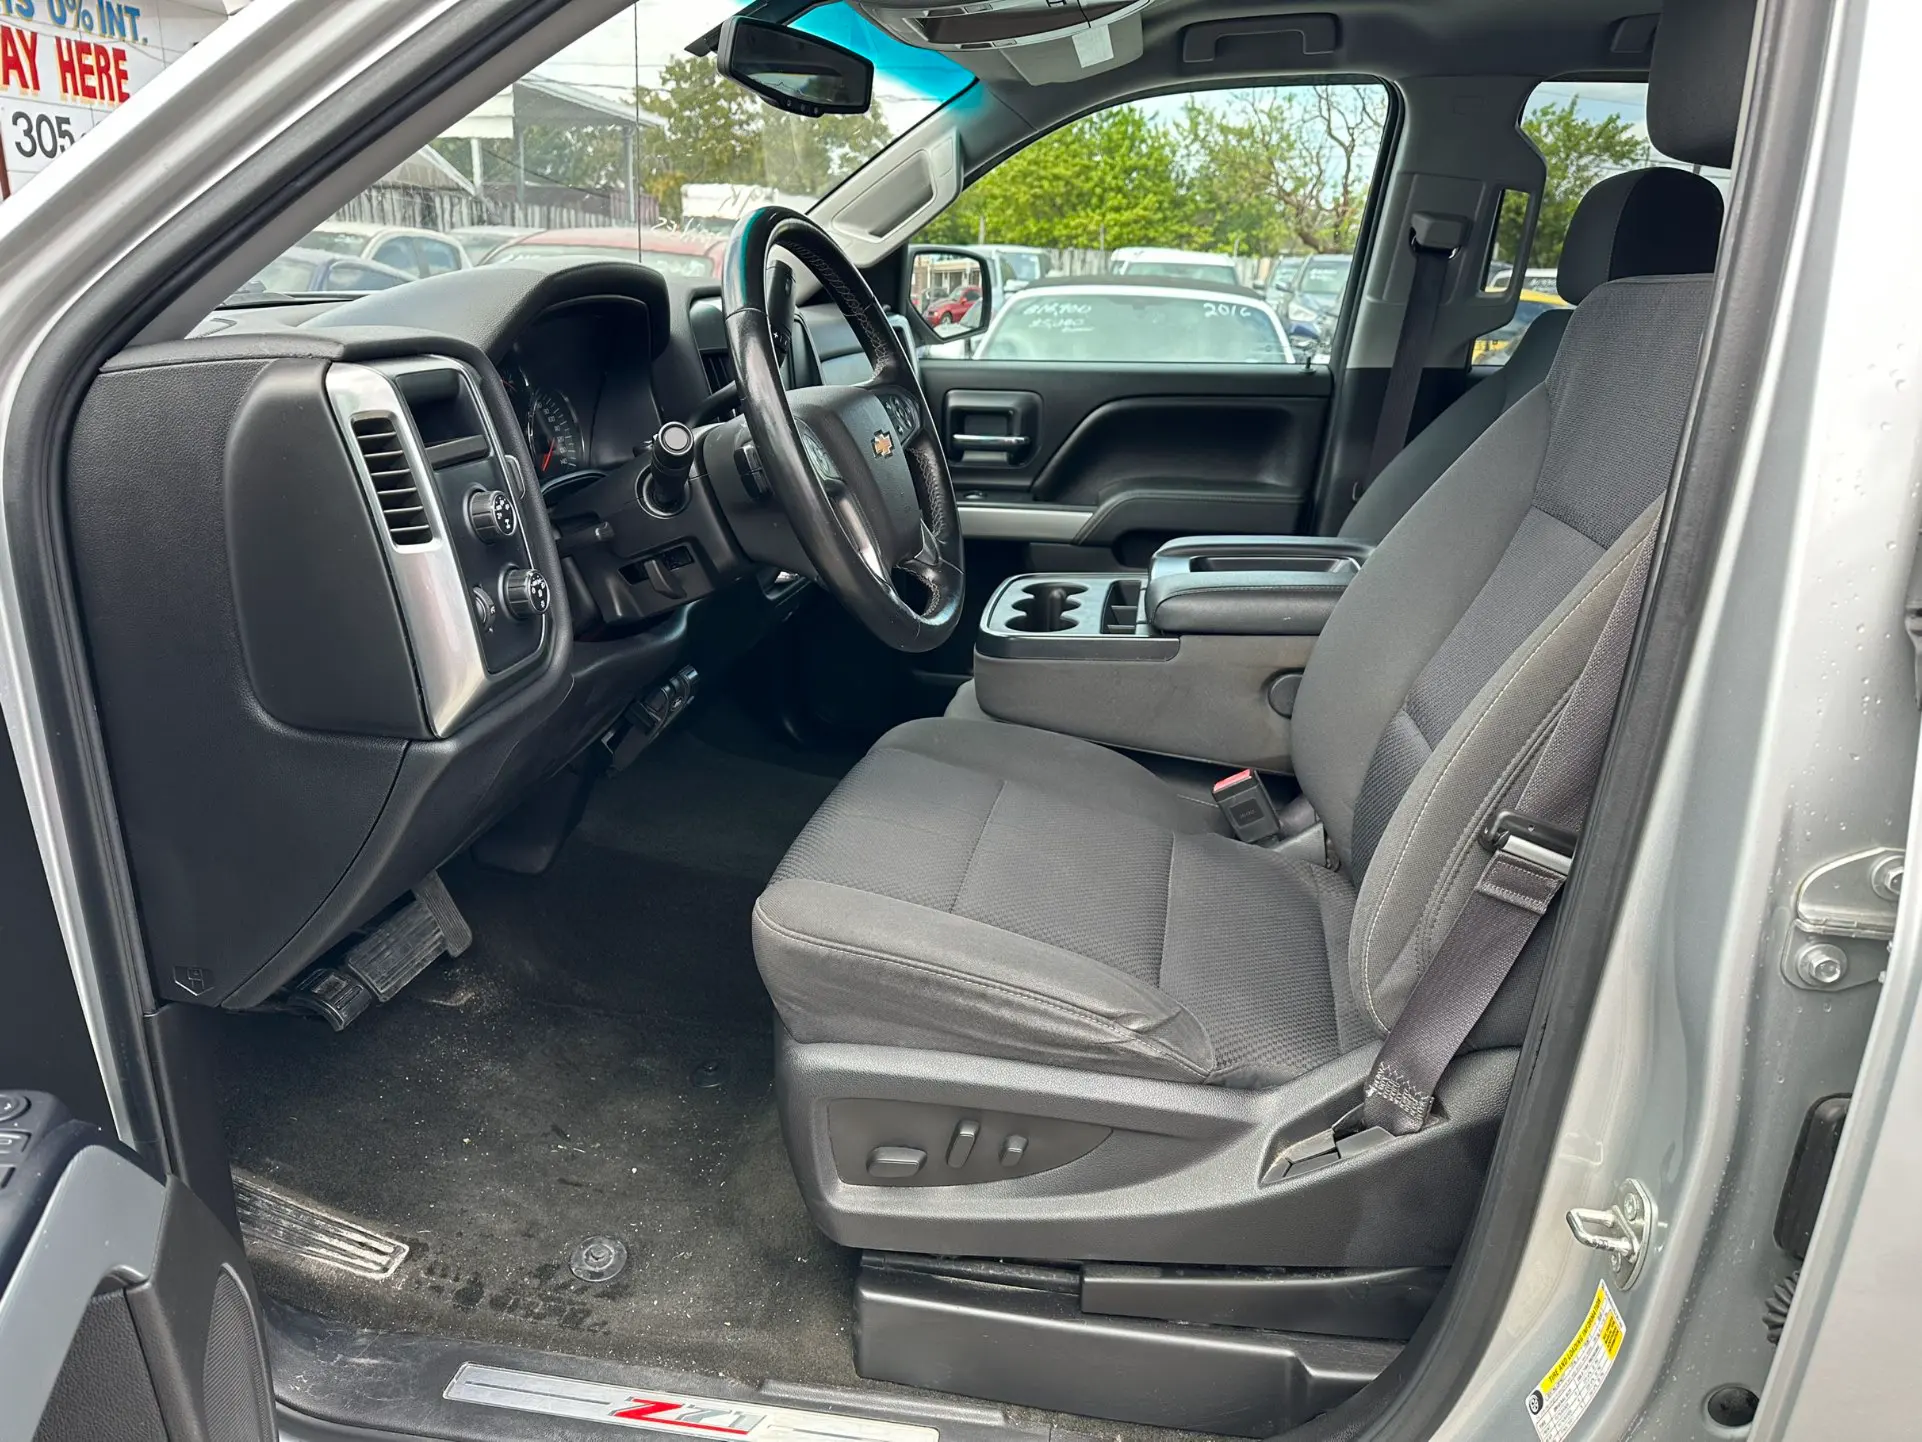 used 2018 Chevrolet Silverado - interior view 1